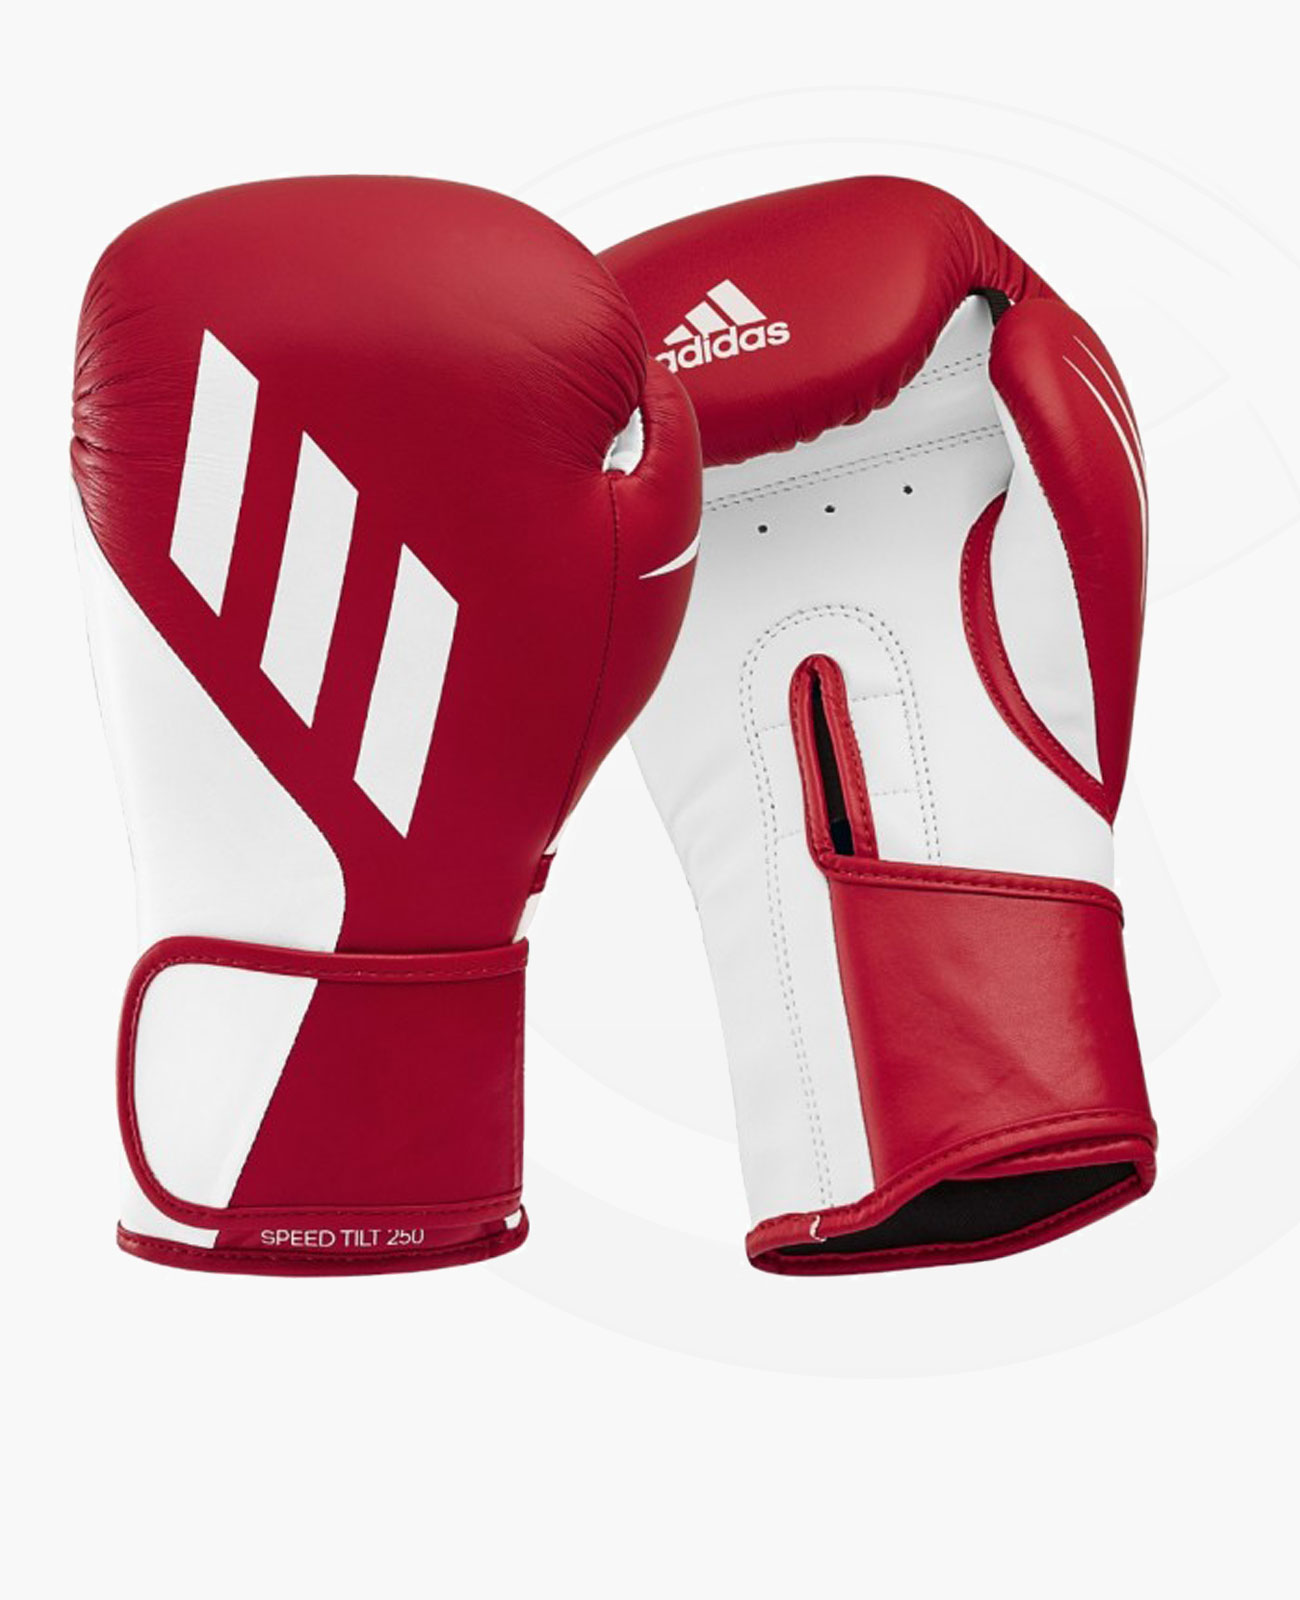 Super meistverkaufte Produkte adidas TILT Fightshop | weiss rot 250 Ausrüstung & Boxhandschuhe Budo